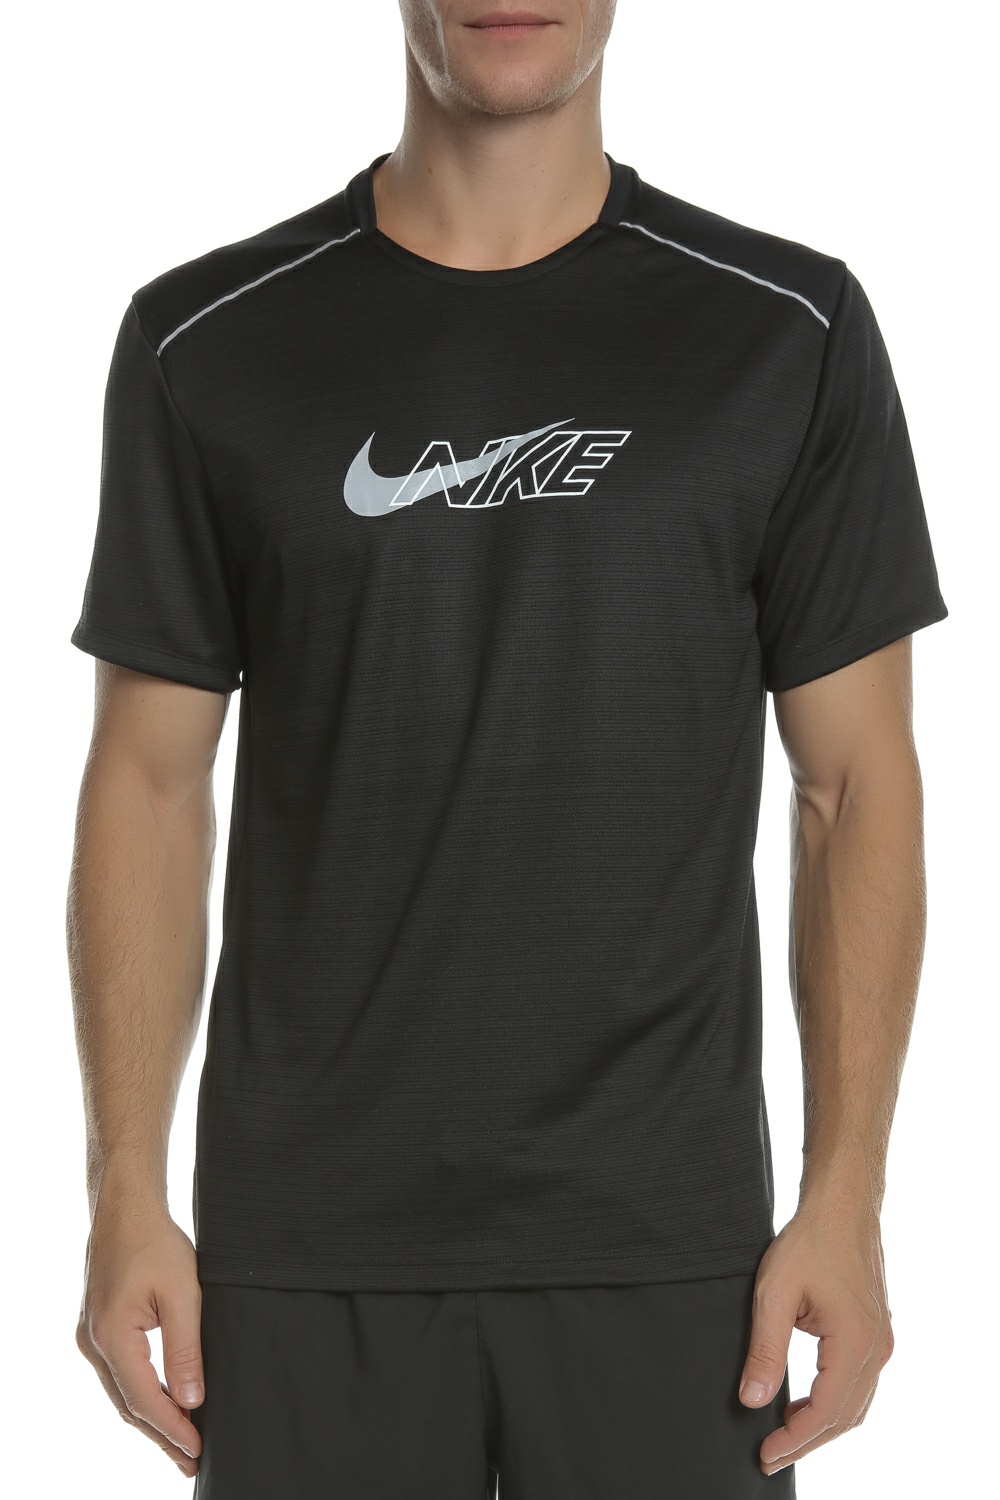 Ανδρικά/Ρούχα/Αθλητικά/T-shirt NIKE - Ανδρική κοντομάνικη μπλούζα NIKE MILER FLASH μαύρη